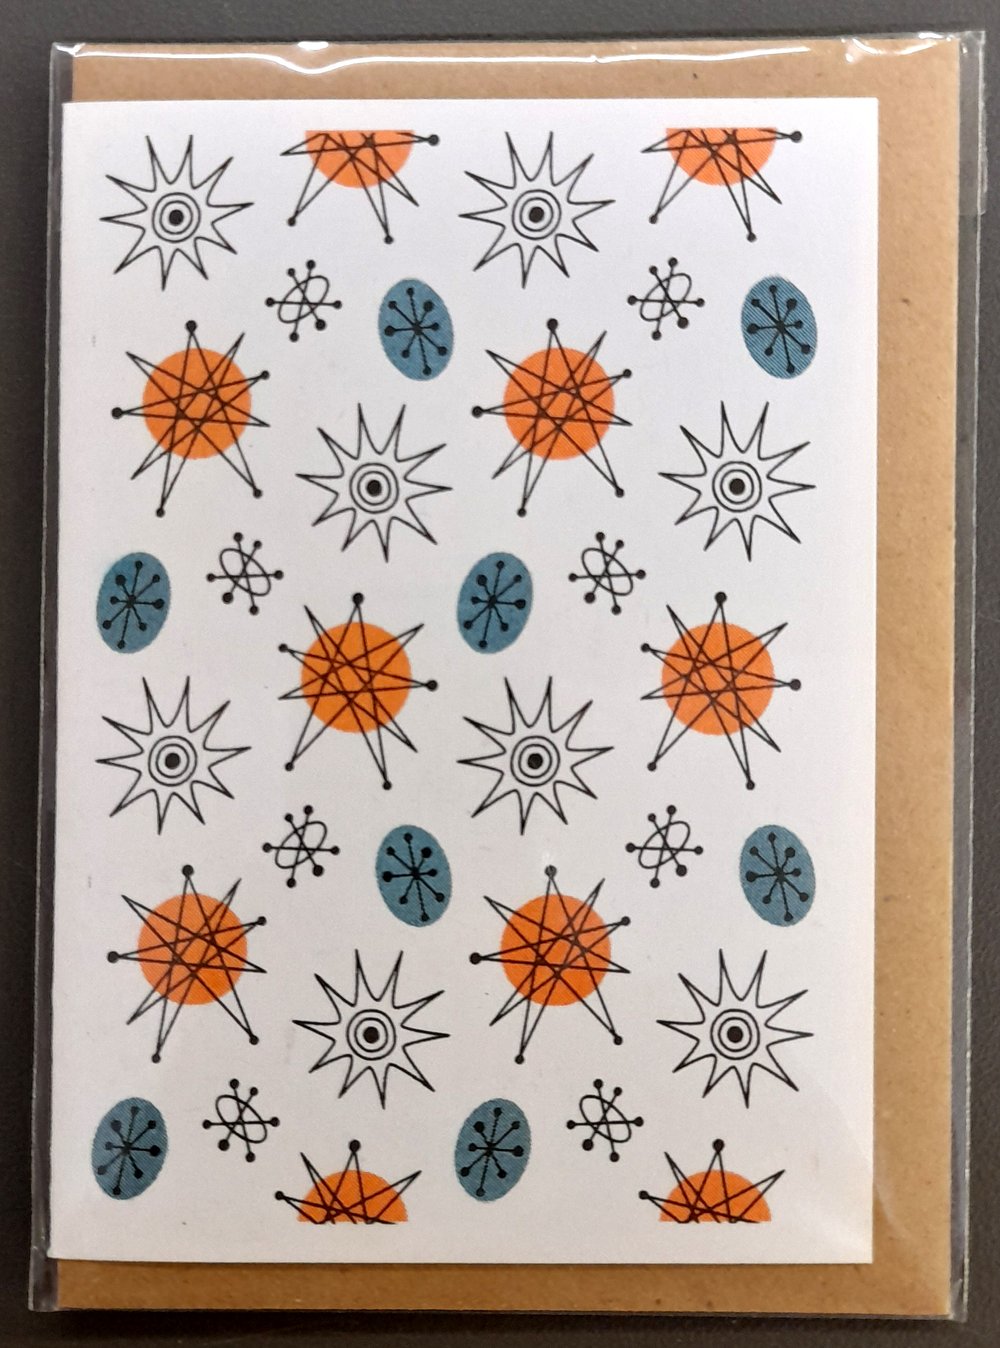 1950s atomic design greeting cards